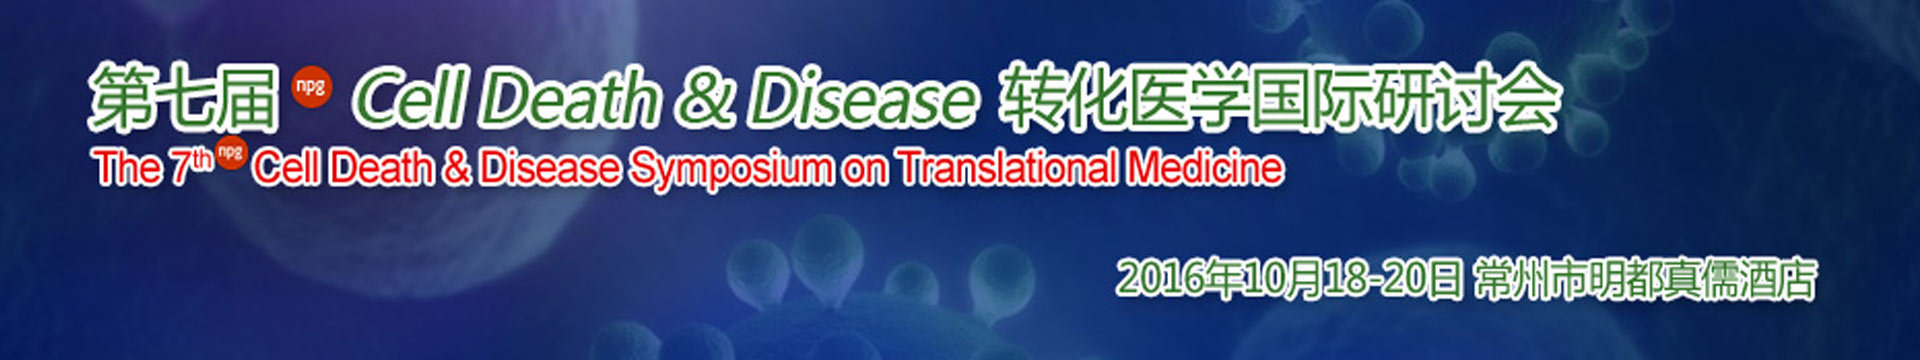 第七届Cell Death & Disease转化医学国际研讨会